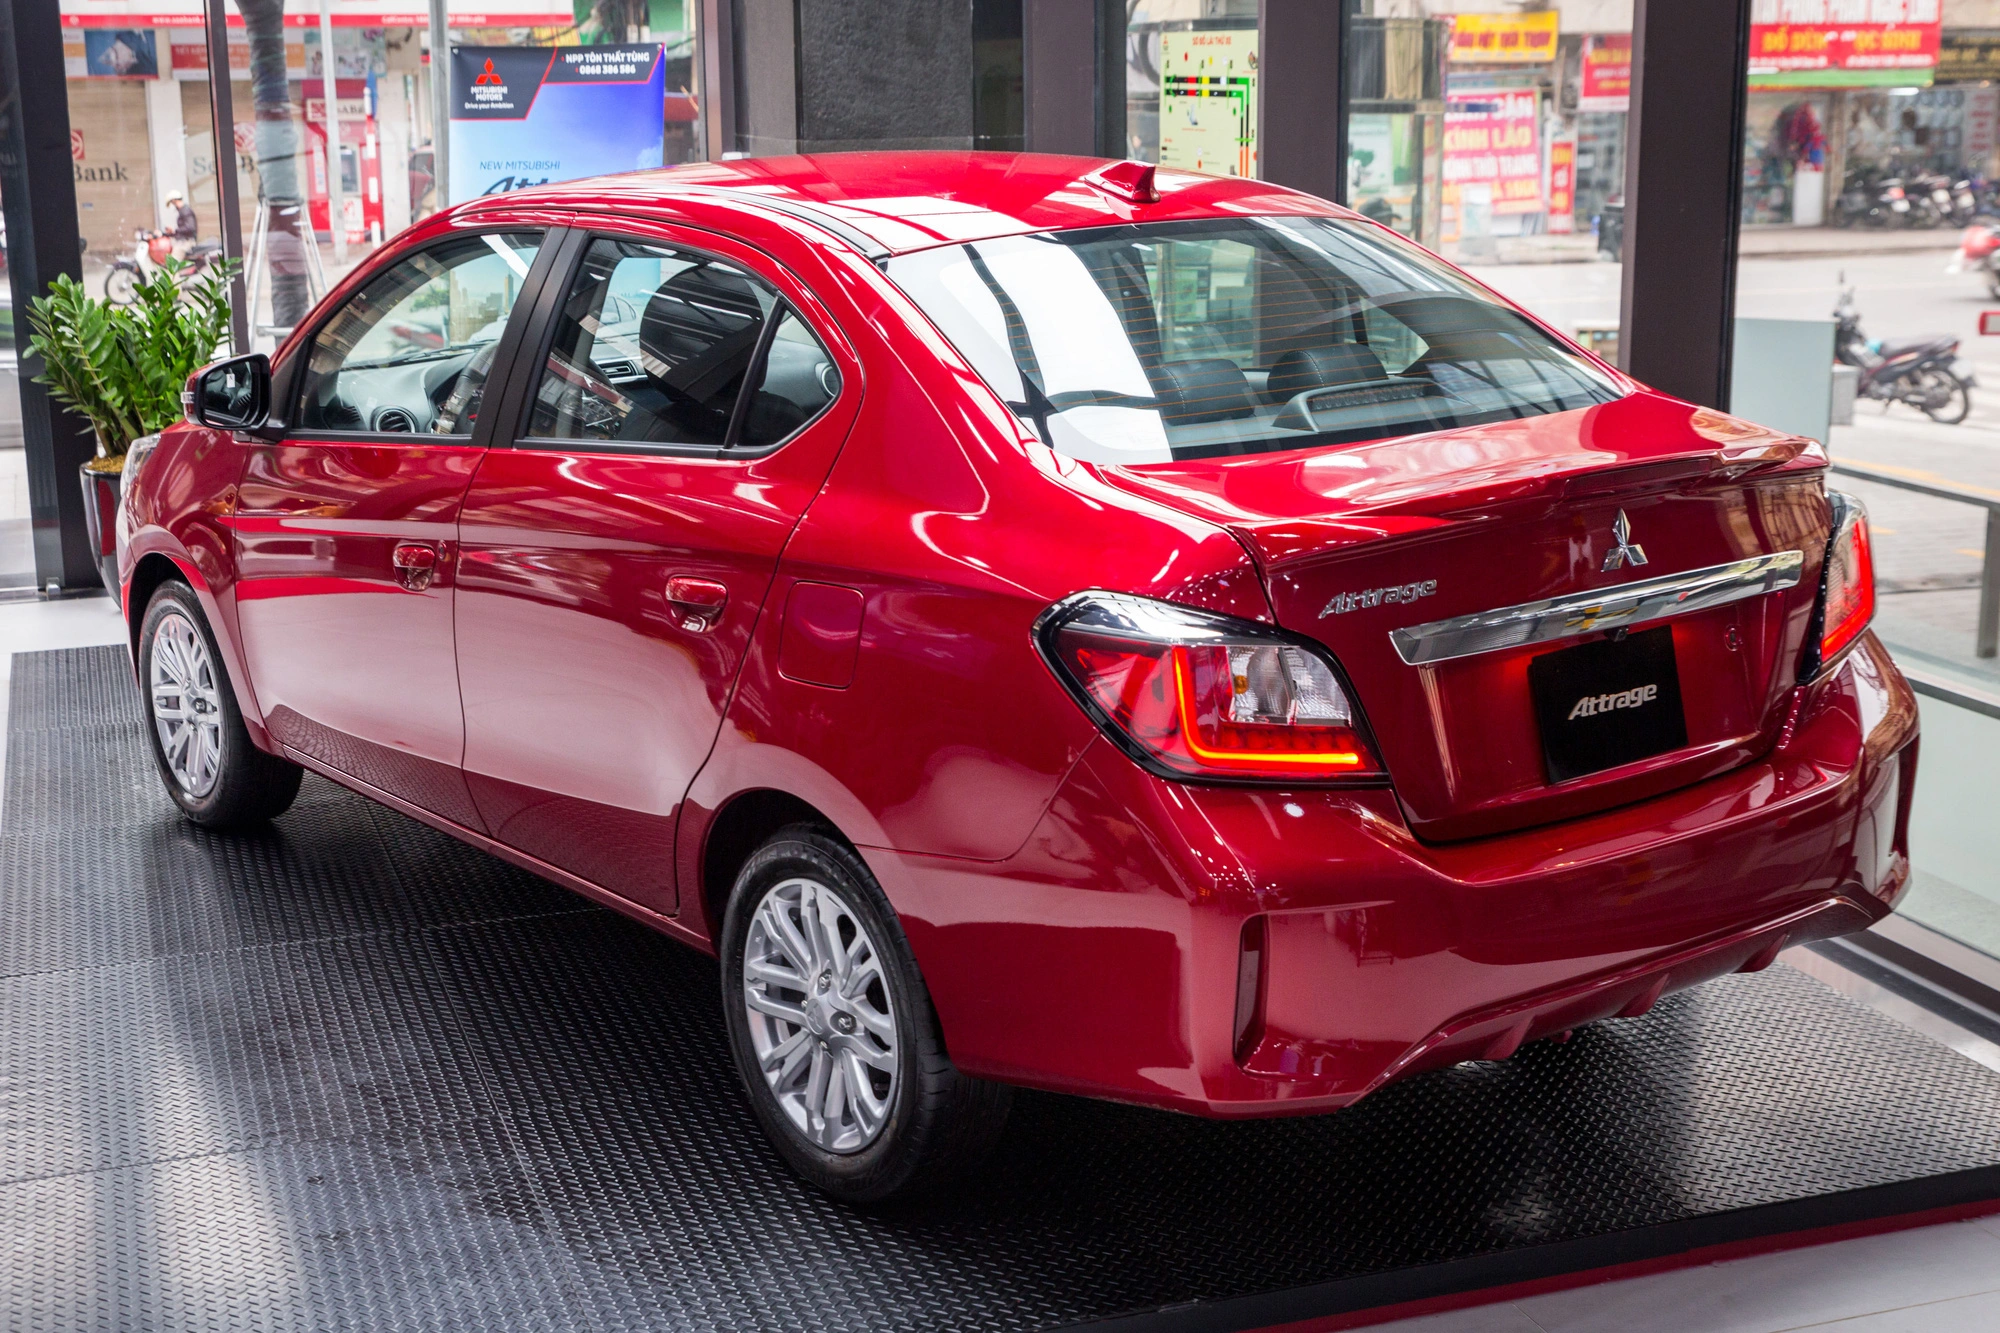 Duy trì sức bền, Mitsubishi Attrage đứng top 3 xe nhập bán chạy tại Việt Nam - Ảnh 3.